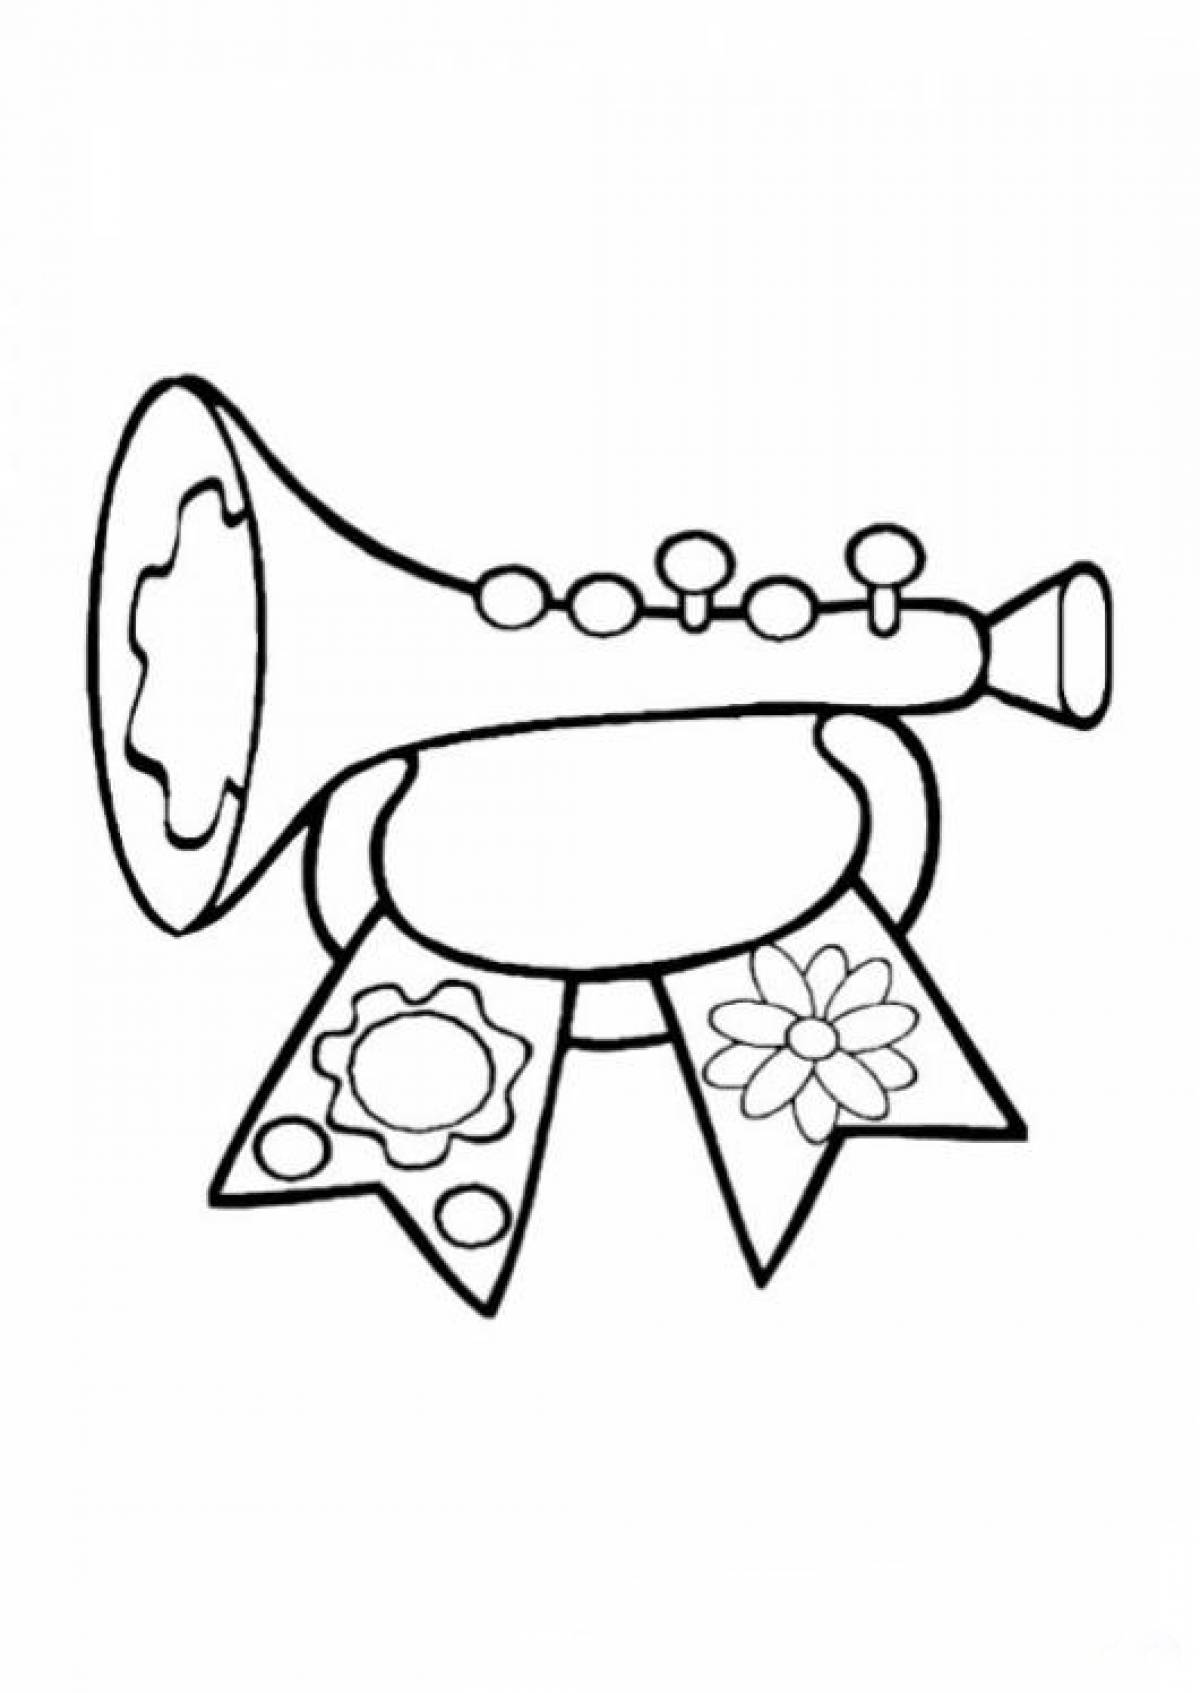 Children's trumpet